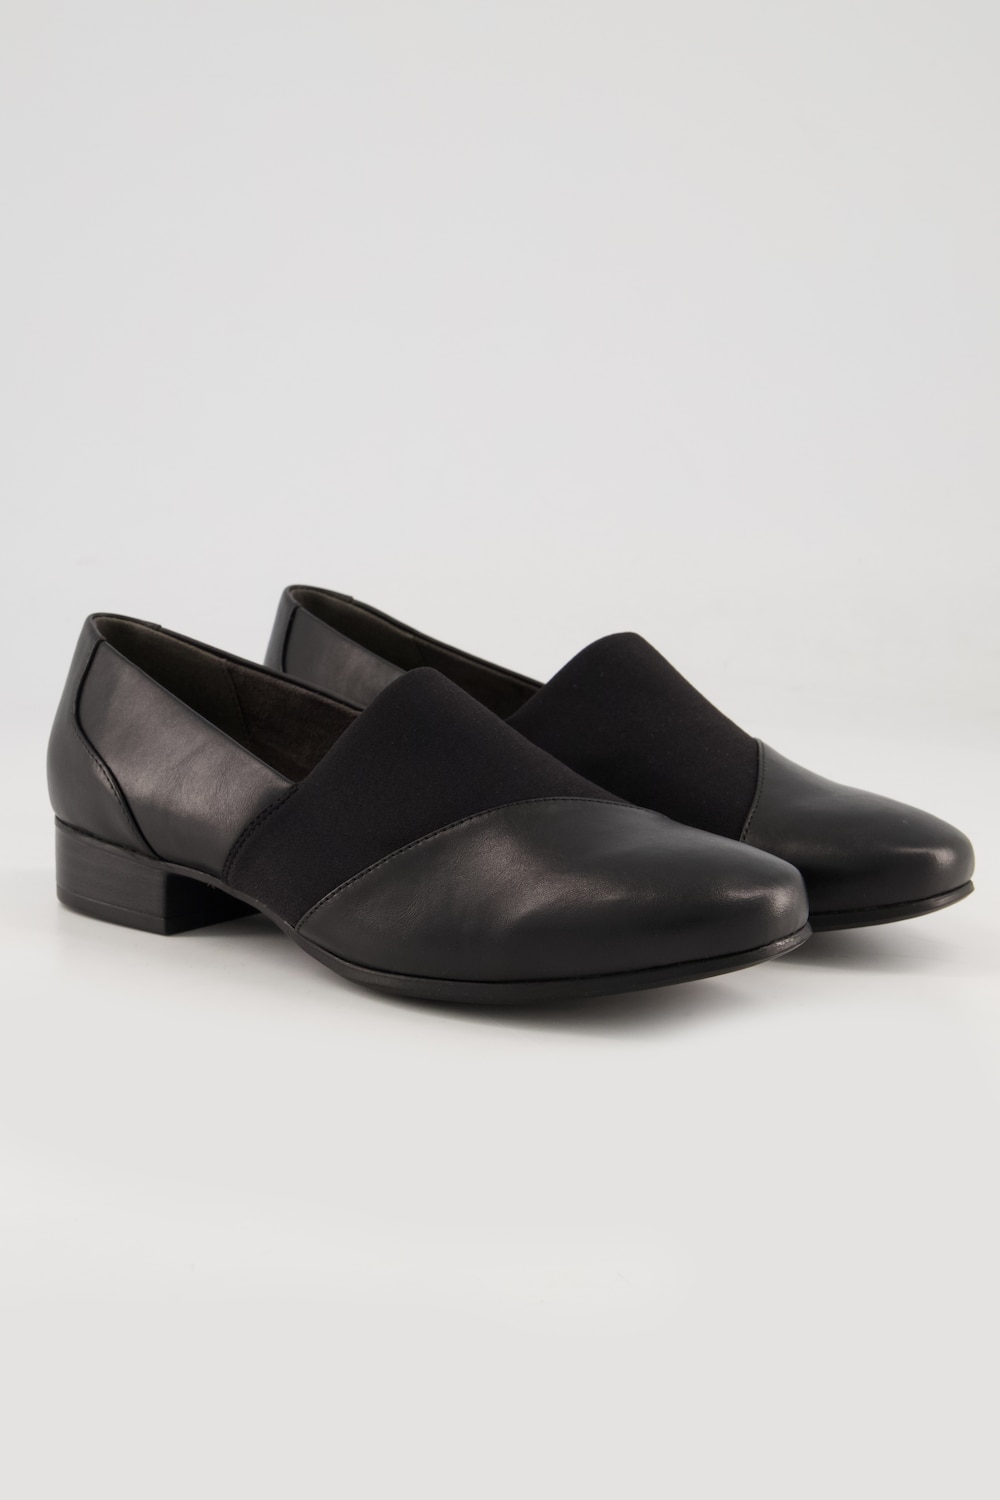 Grote Maten Jana Shoes, Dames, zwart, Maat: 42, Overige/Synthetische vezels, Ulla Popken